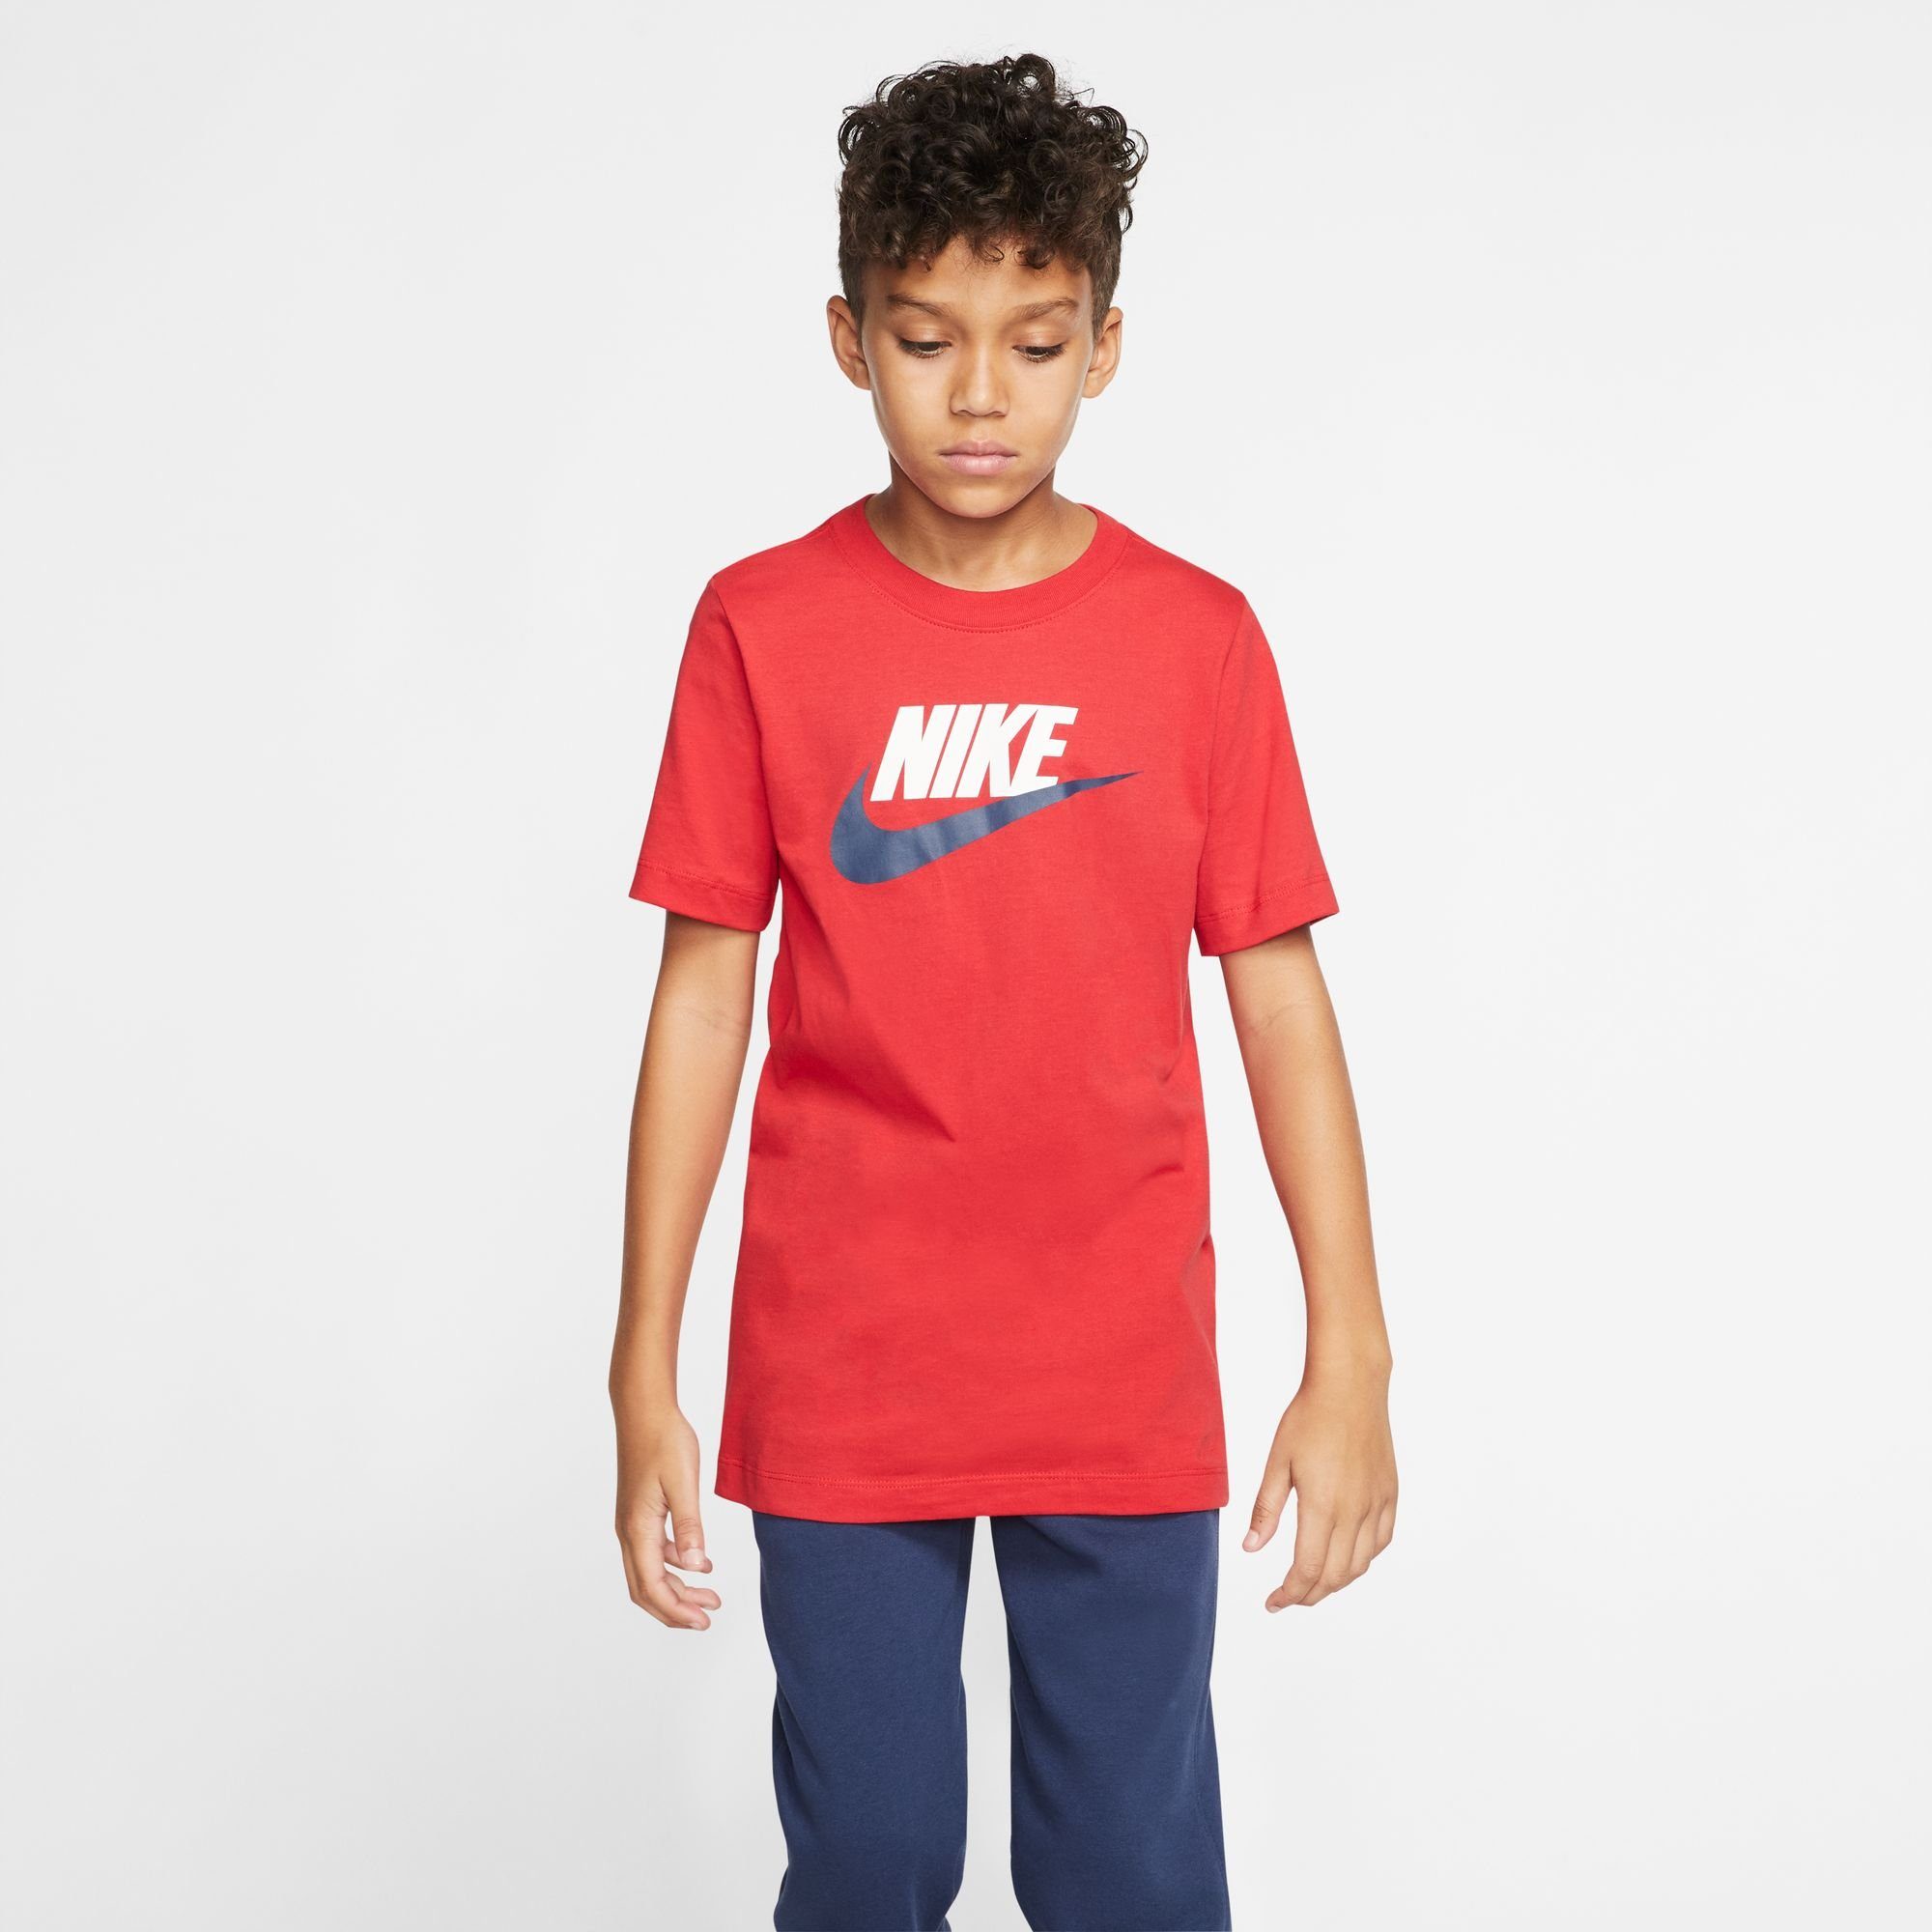 T-SHIRT COTTON Sportswear T-Shirt KIDS' Nike BIG rot